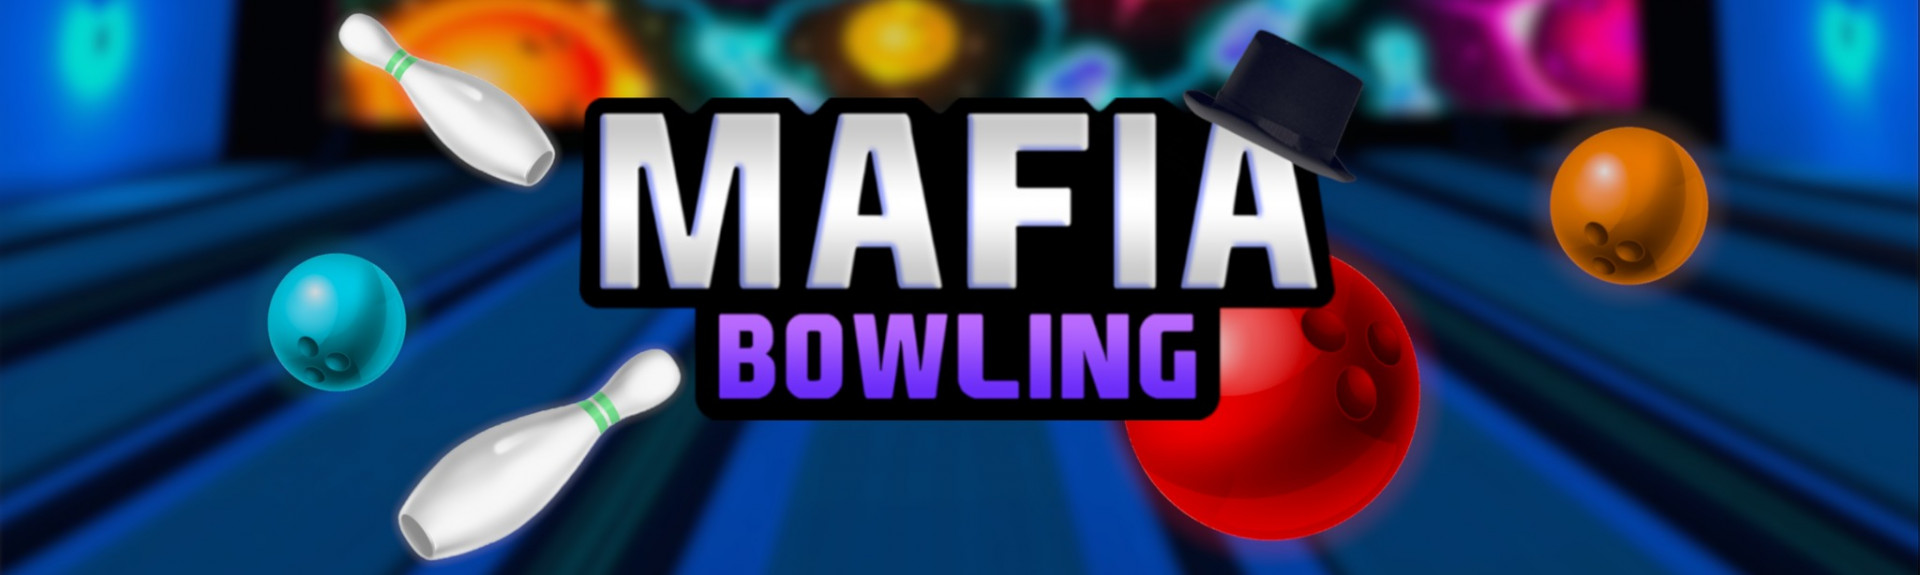 Mafia Bowling